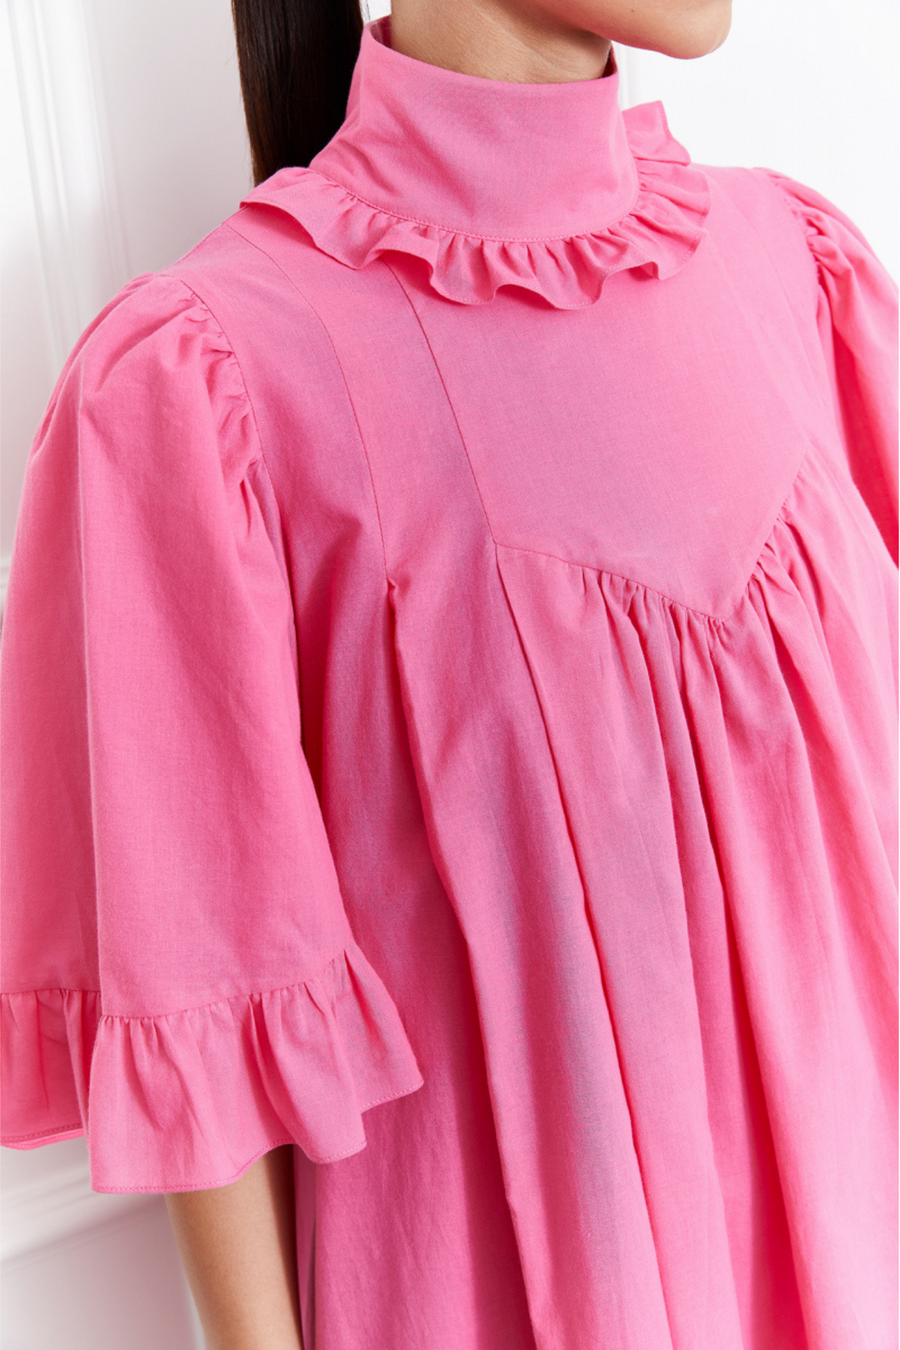 Lulu Dress (Pink)